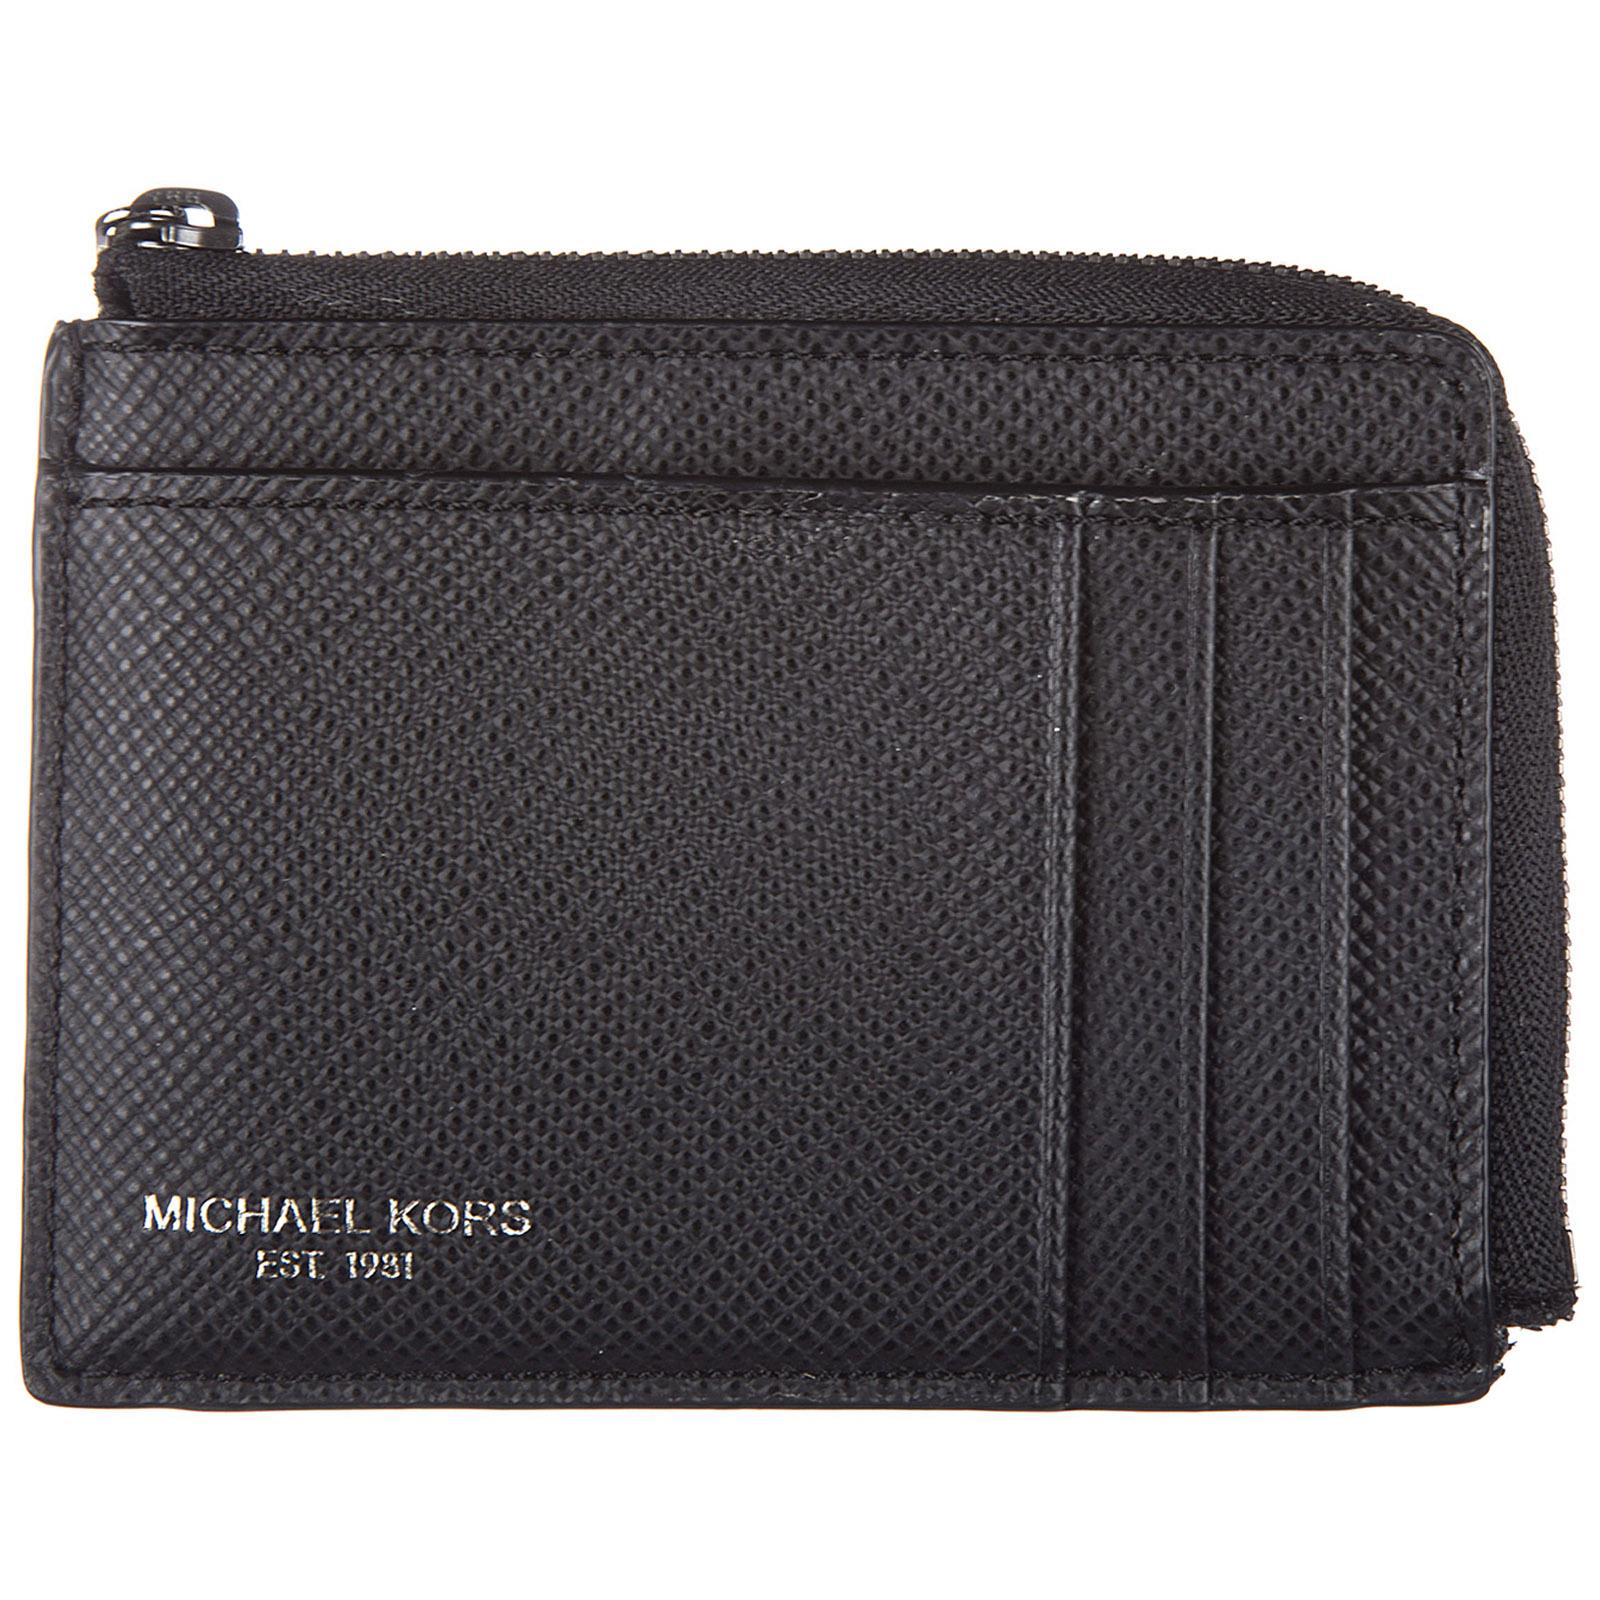 Lyst - Michael Kors Genuine Leather Credit Card Case Holder Wallet Harrison in Black for Men